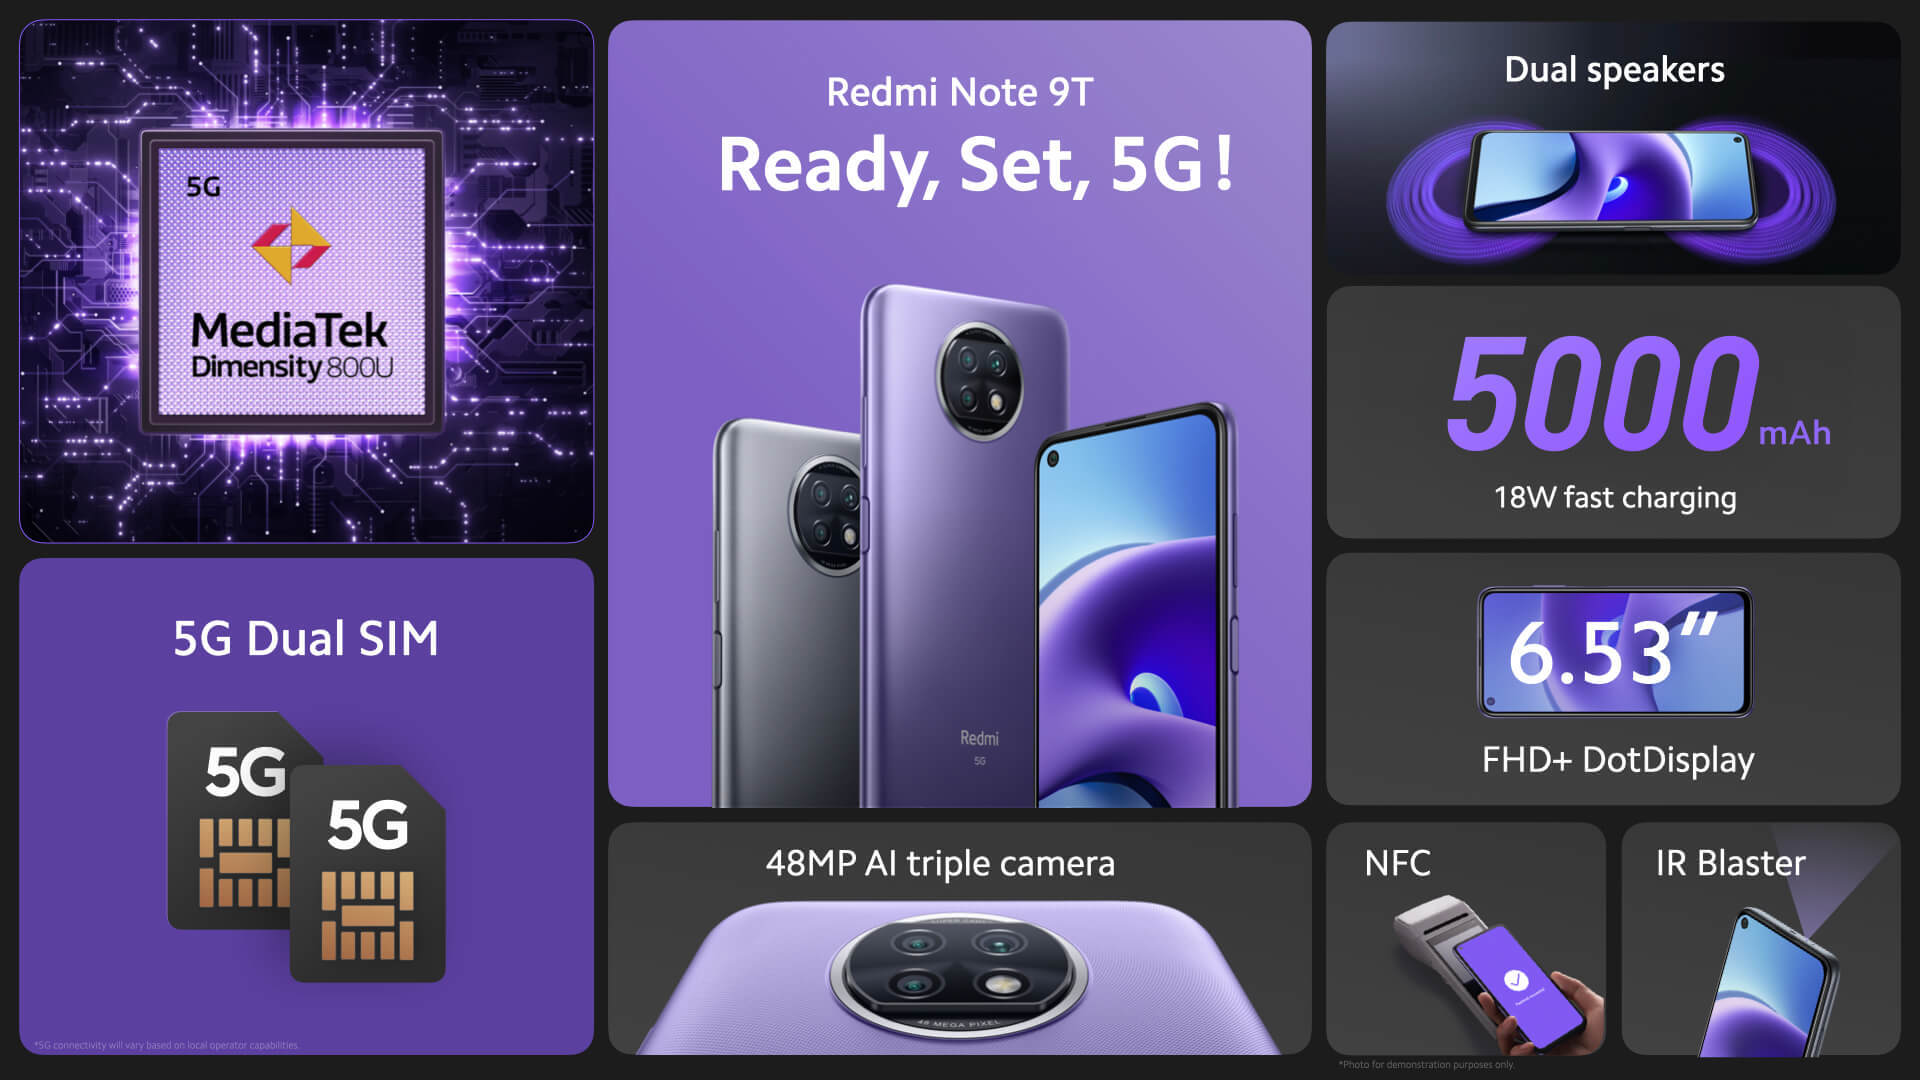 شاومي تكشف رسميًا عن هاتف Redmi Note 9T 5G أول هواتف Redmi عالميًا بتقنية 5G